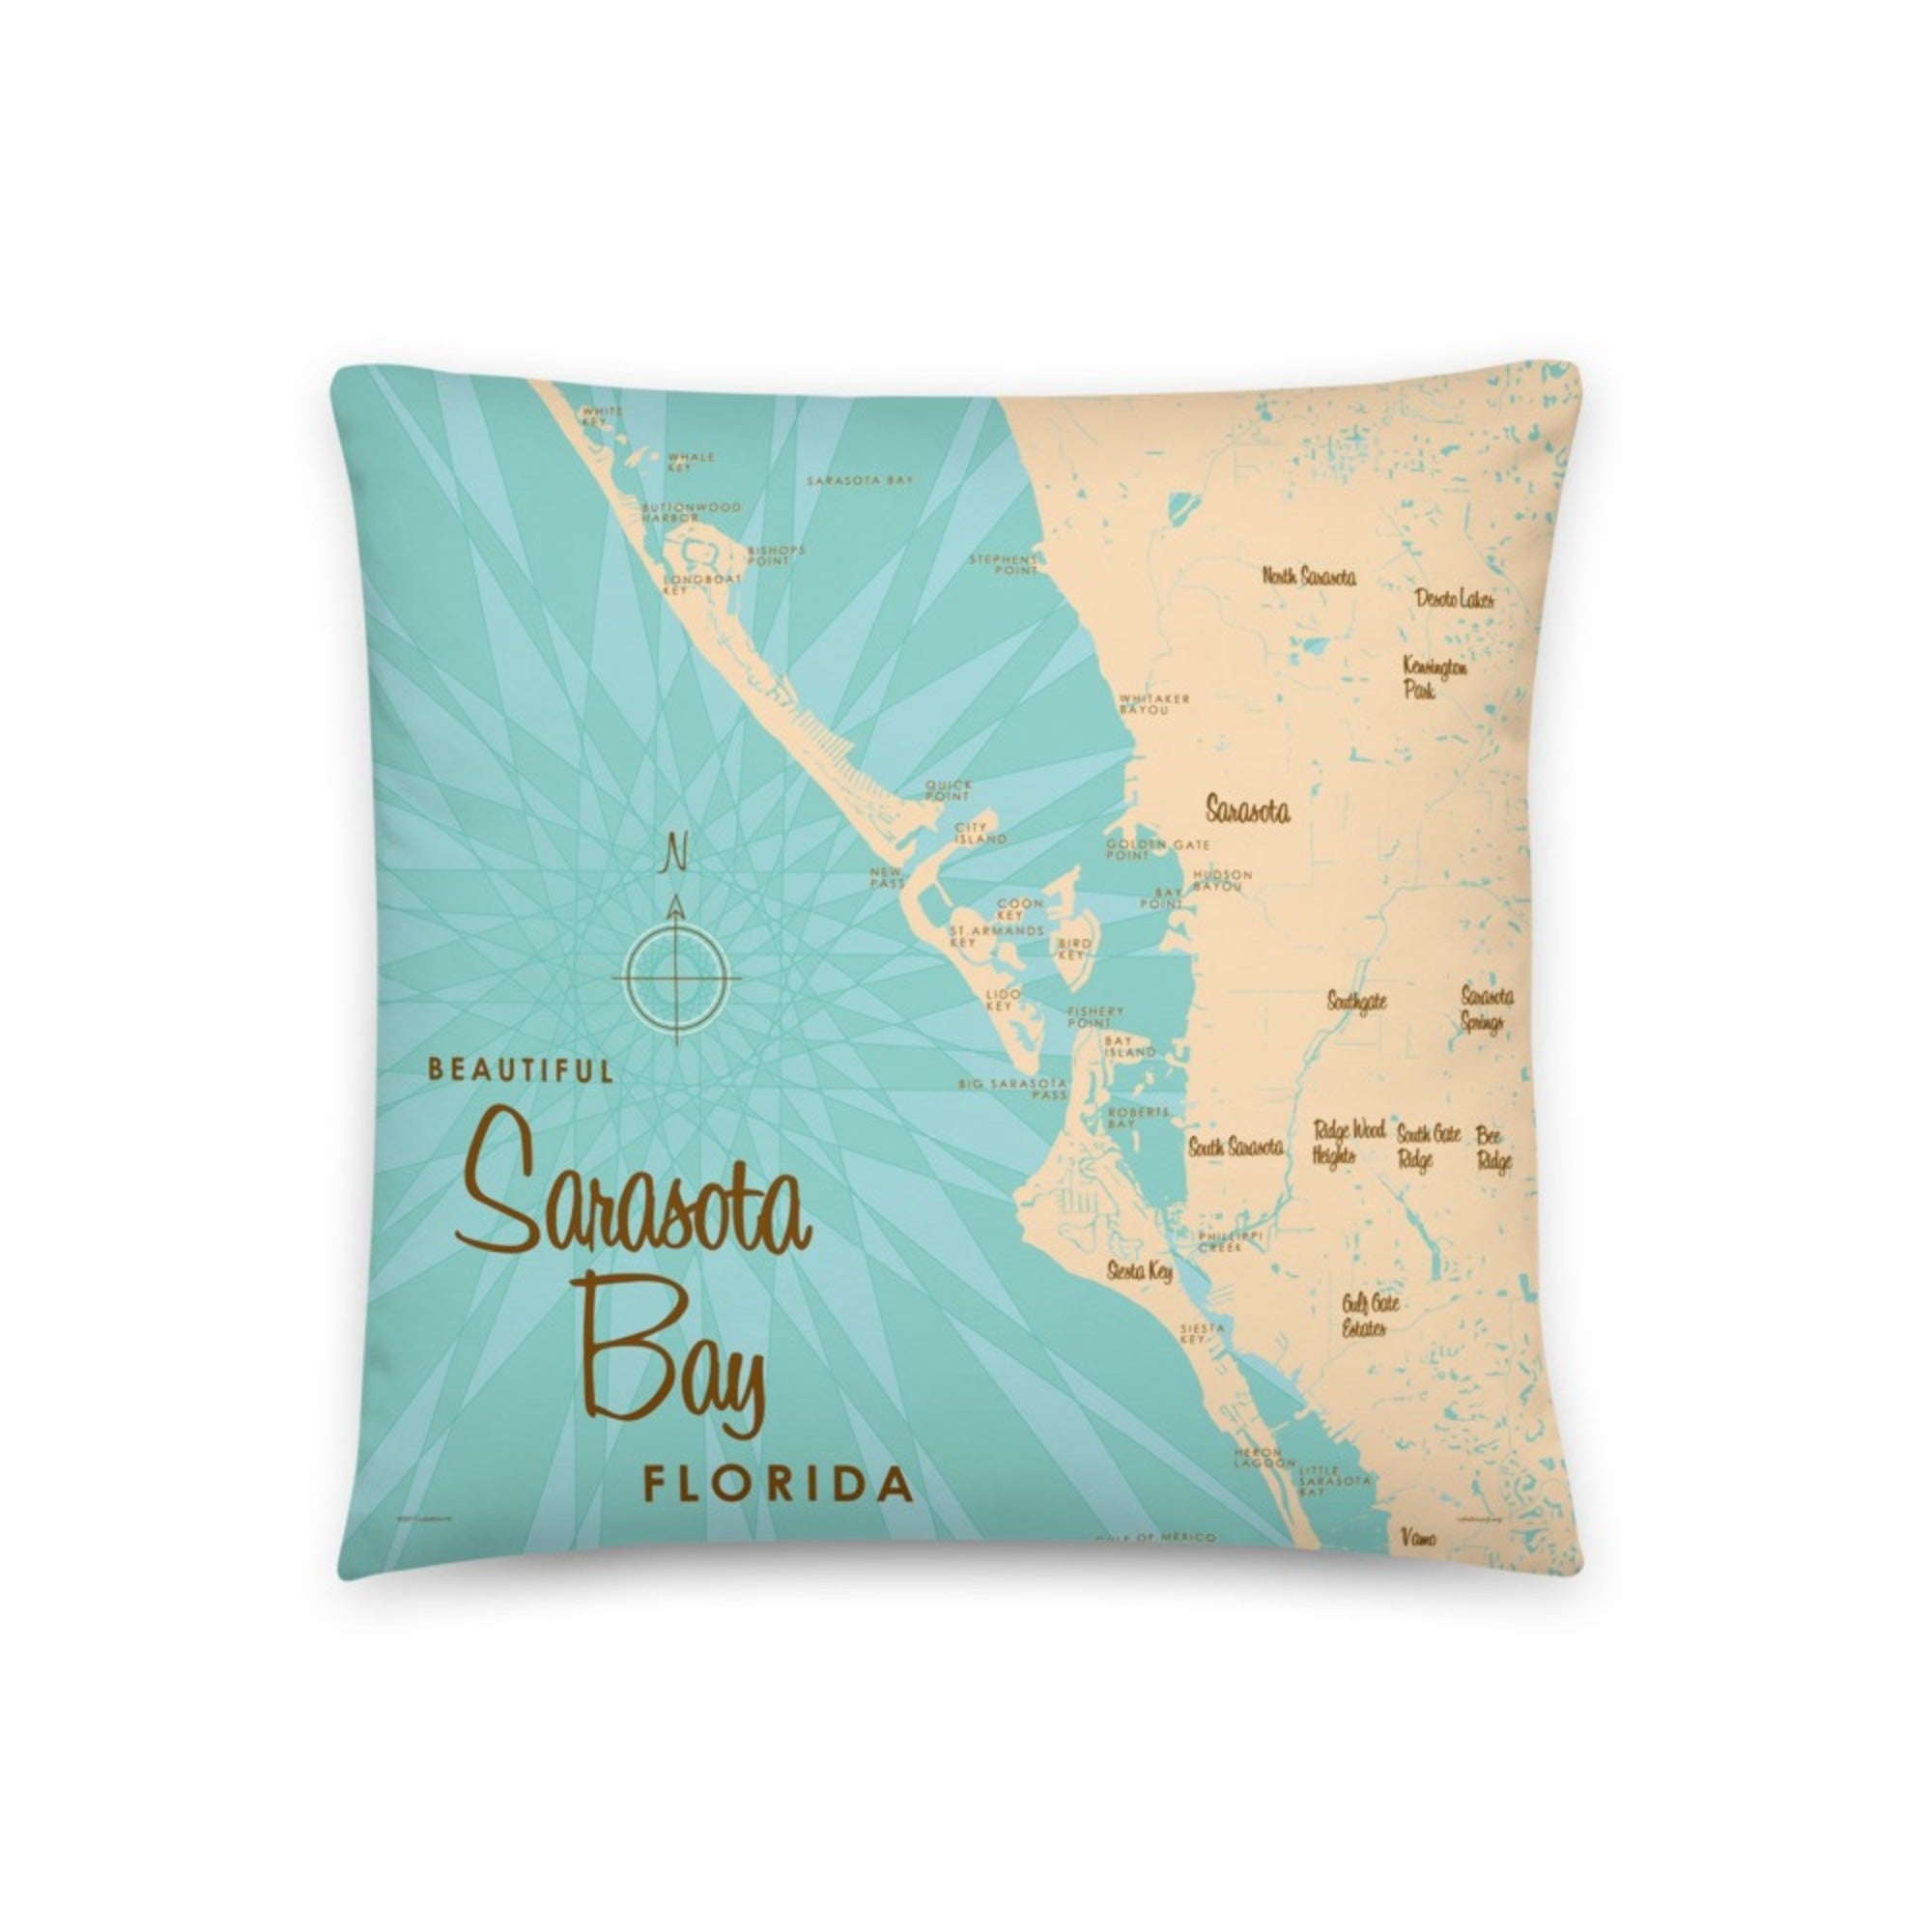 Sarasota Bay Florida Pillow